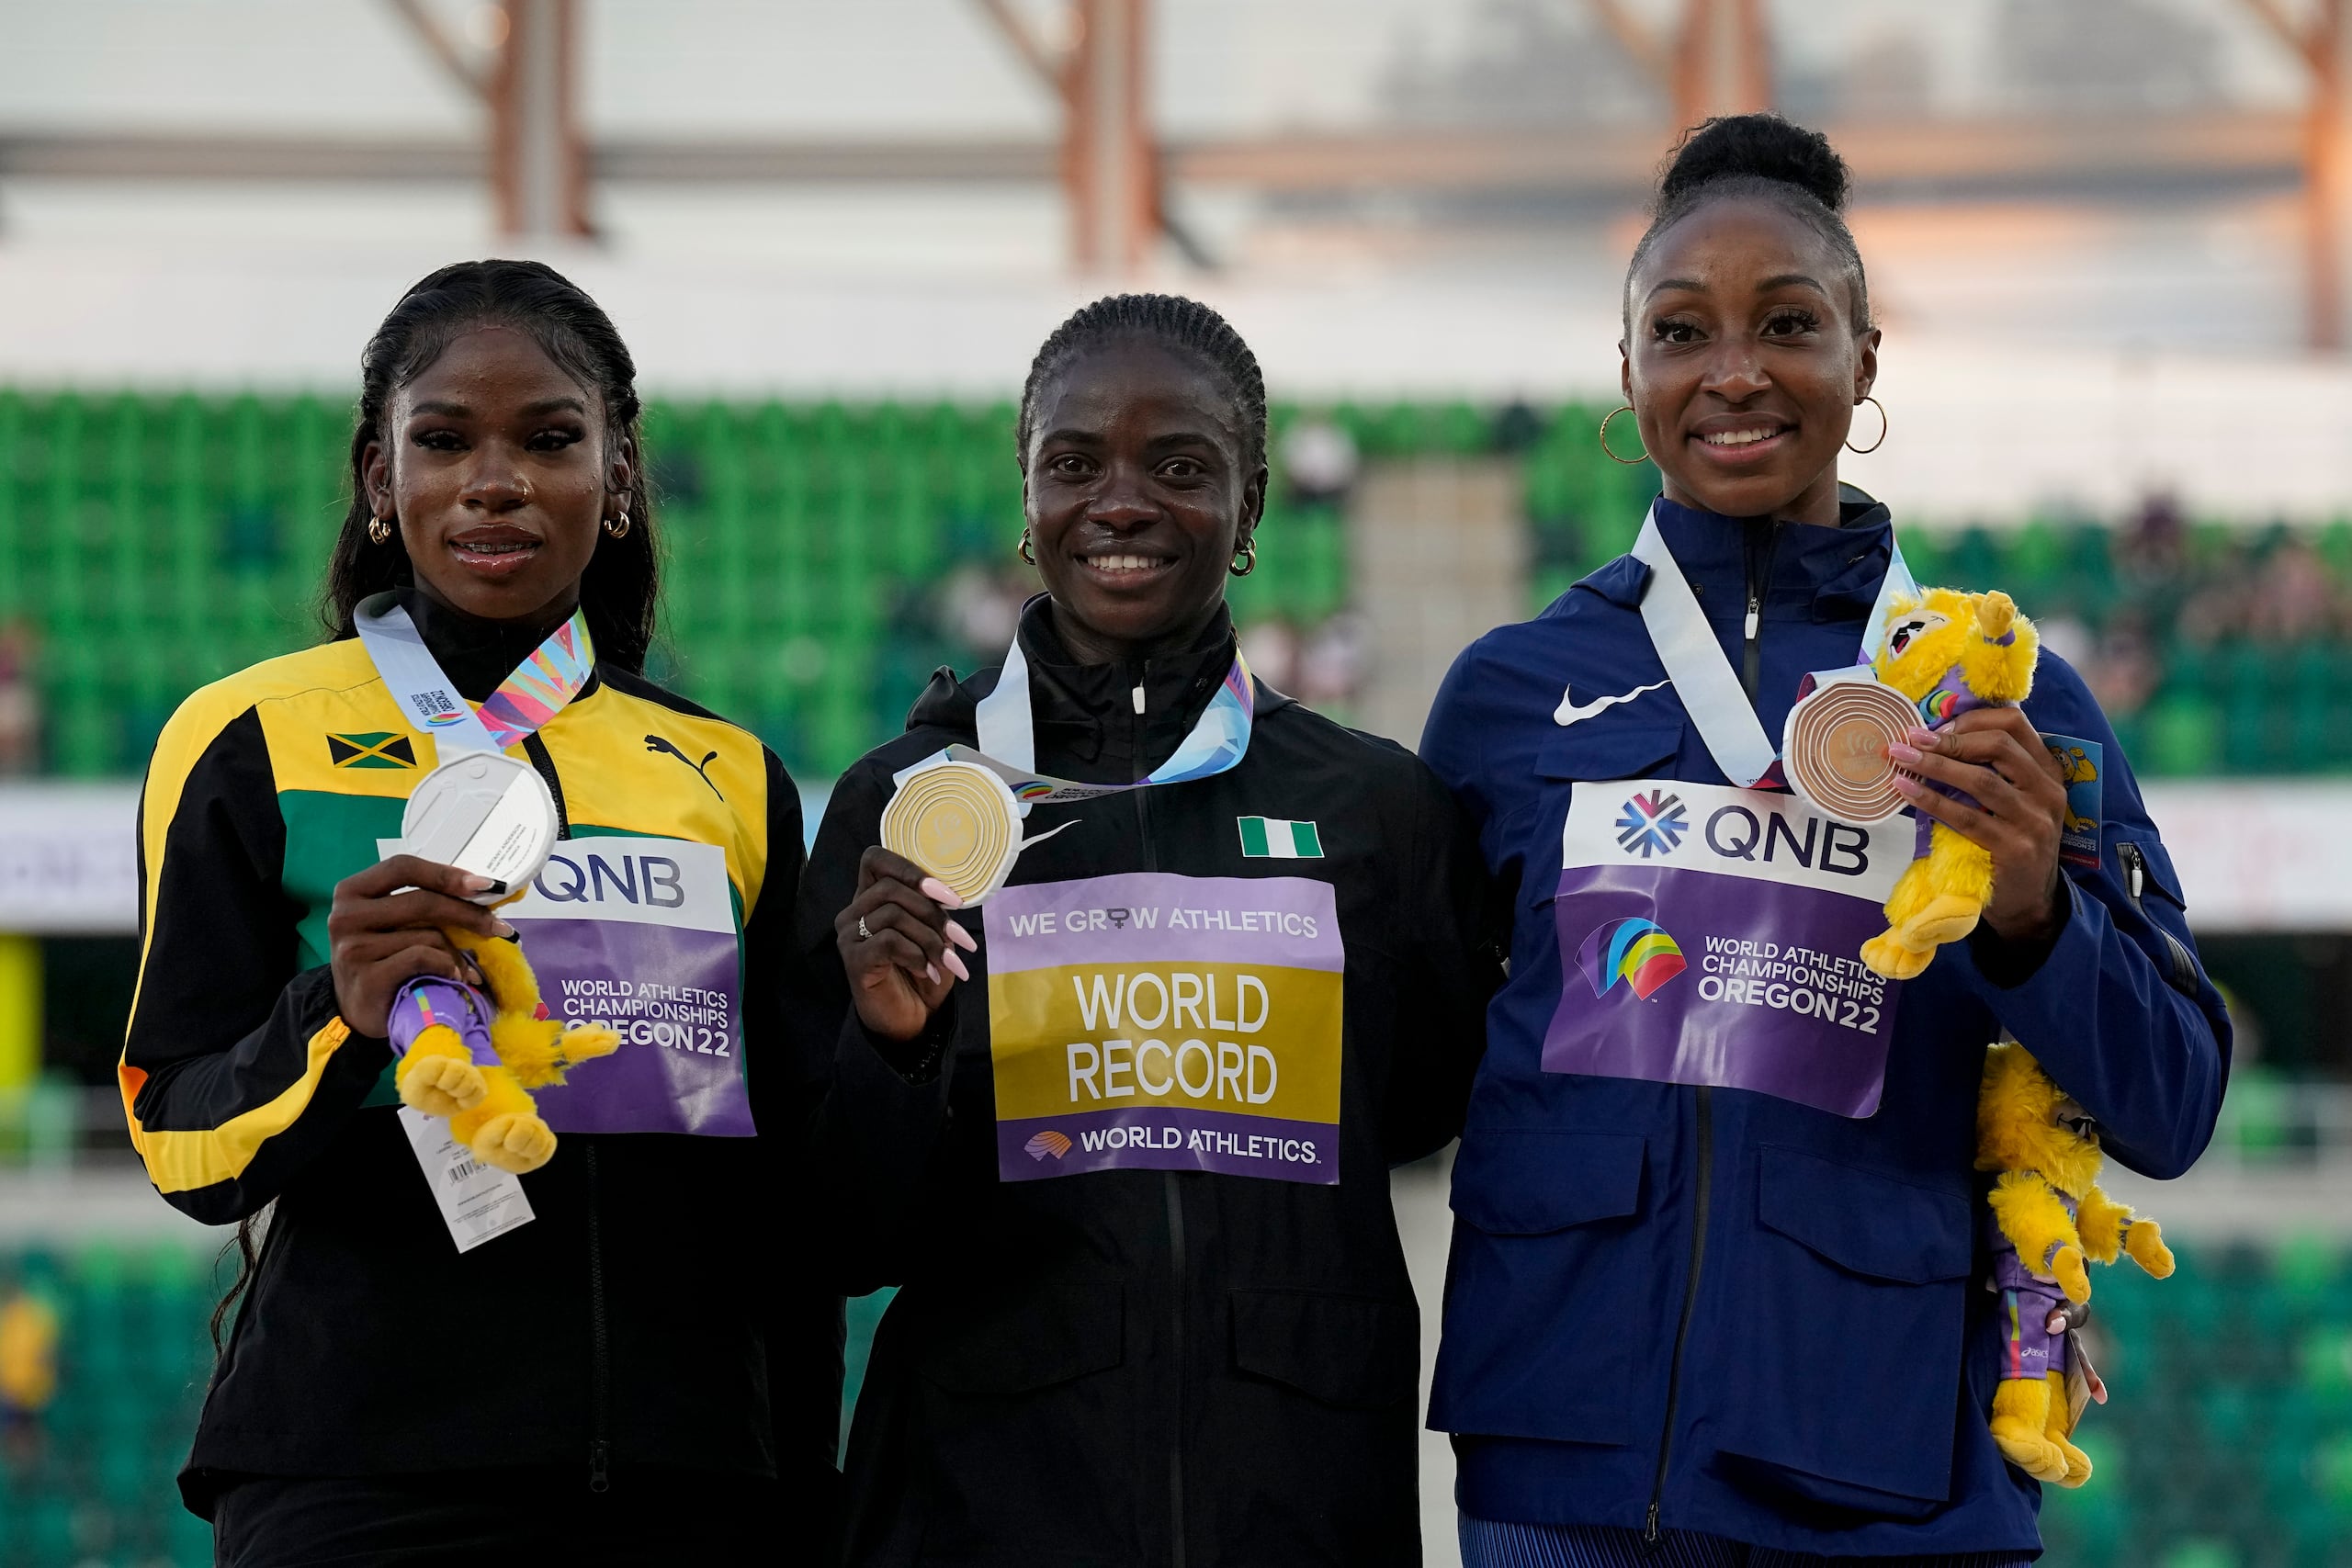 La ganadora de l a medalla de oro del pasado Mundial de Atletismo, Tobi Amusan, de Nigeria, al centro, posa junto a la medallista de plata, Britany Anderson, de Jamaica, a la izquierda, y junto a la ganadora de la medalla de bronce, Jasmine Camacho Quinn de Puerto Rico.